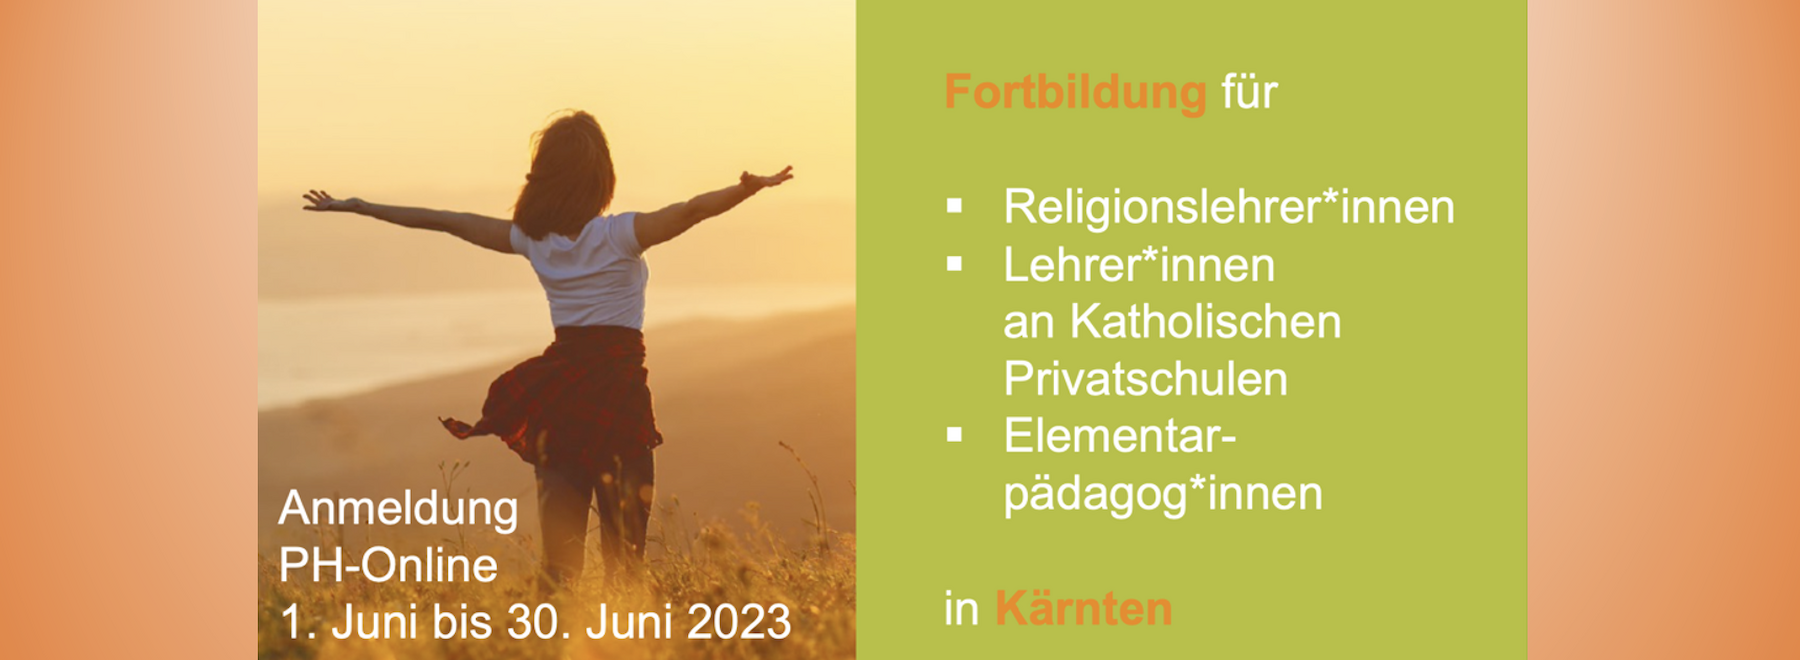 Fortbildungsprogramm für Kärnten 2023/24